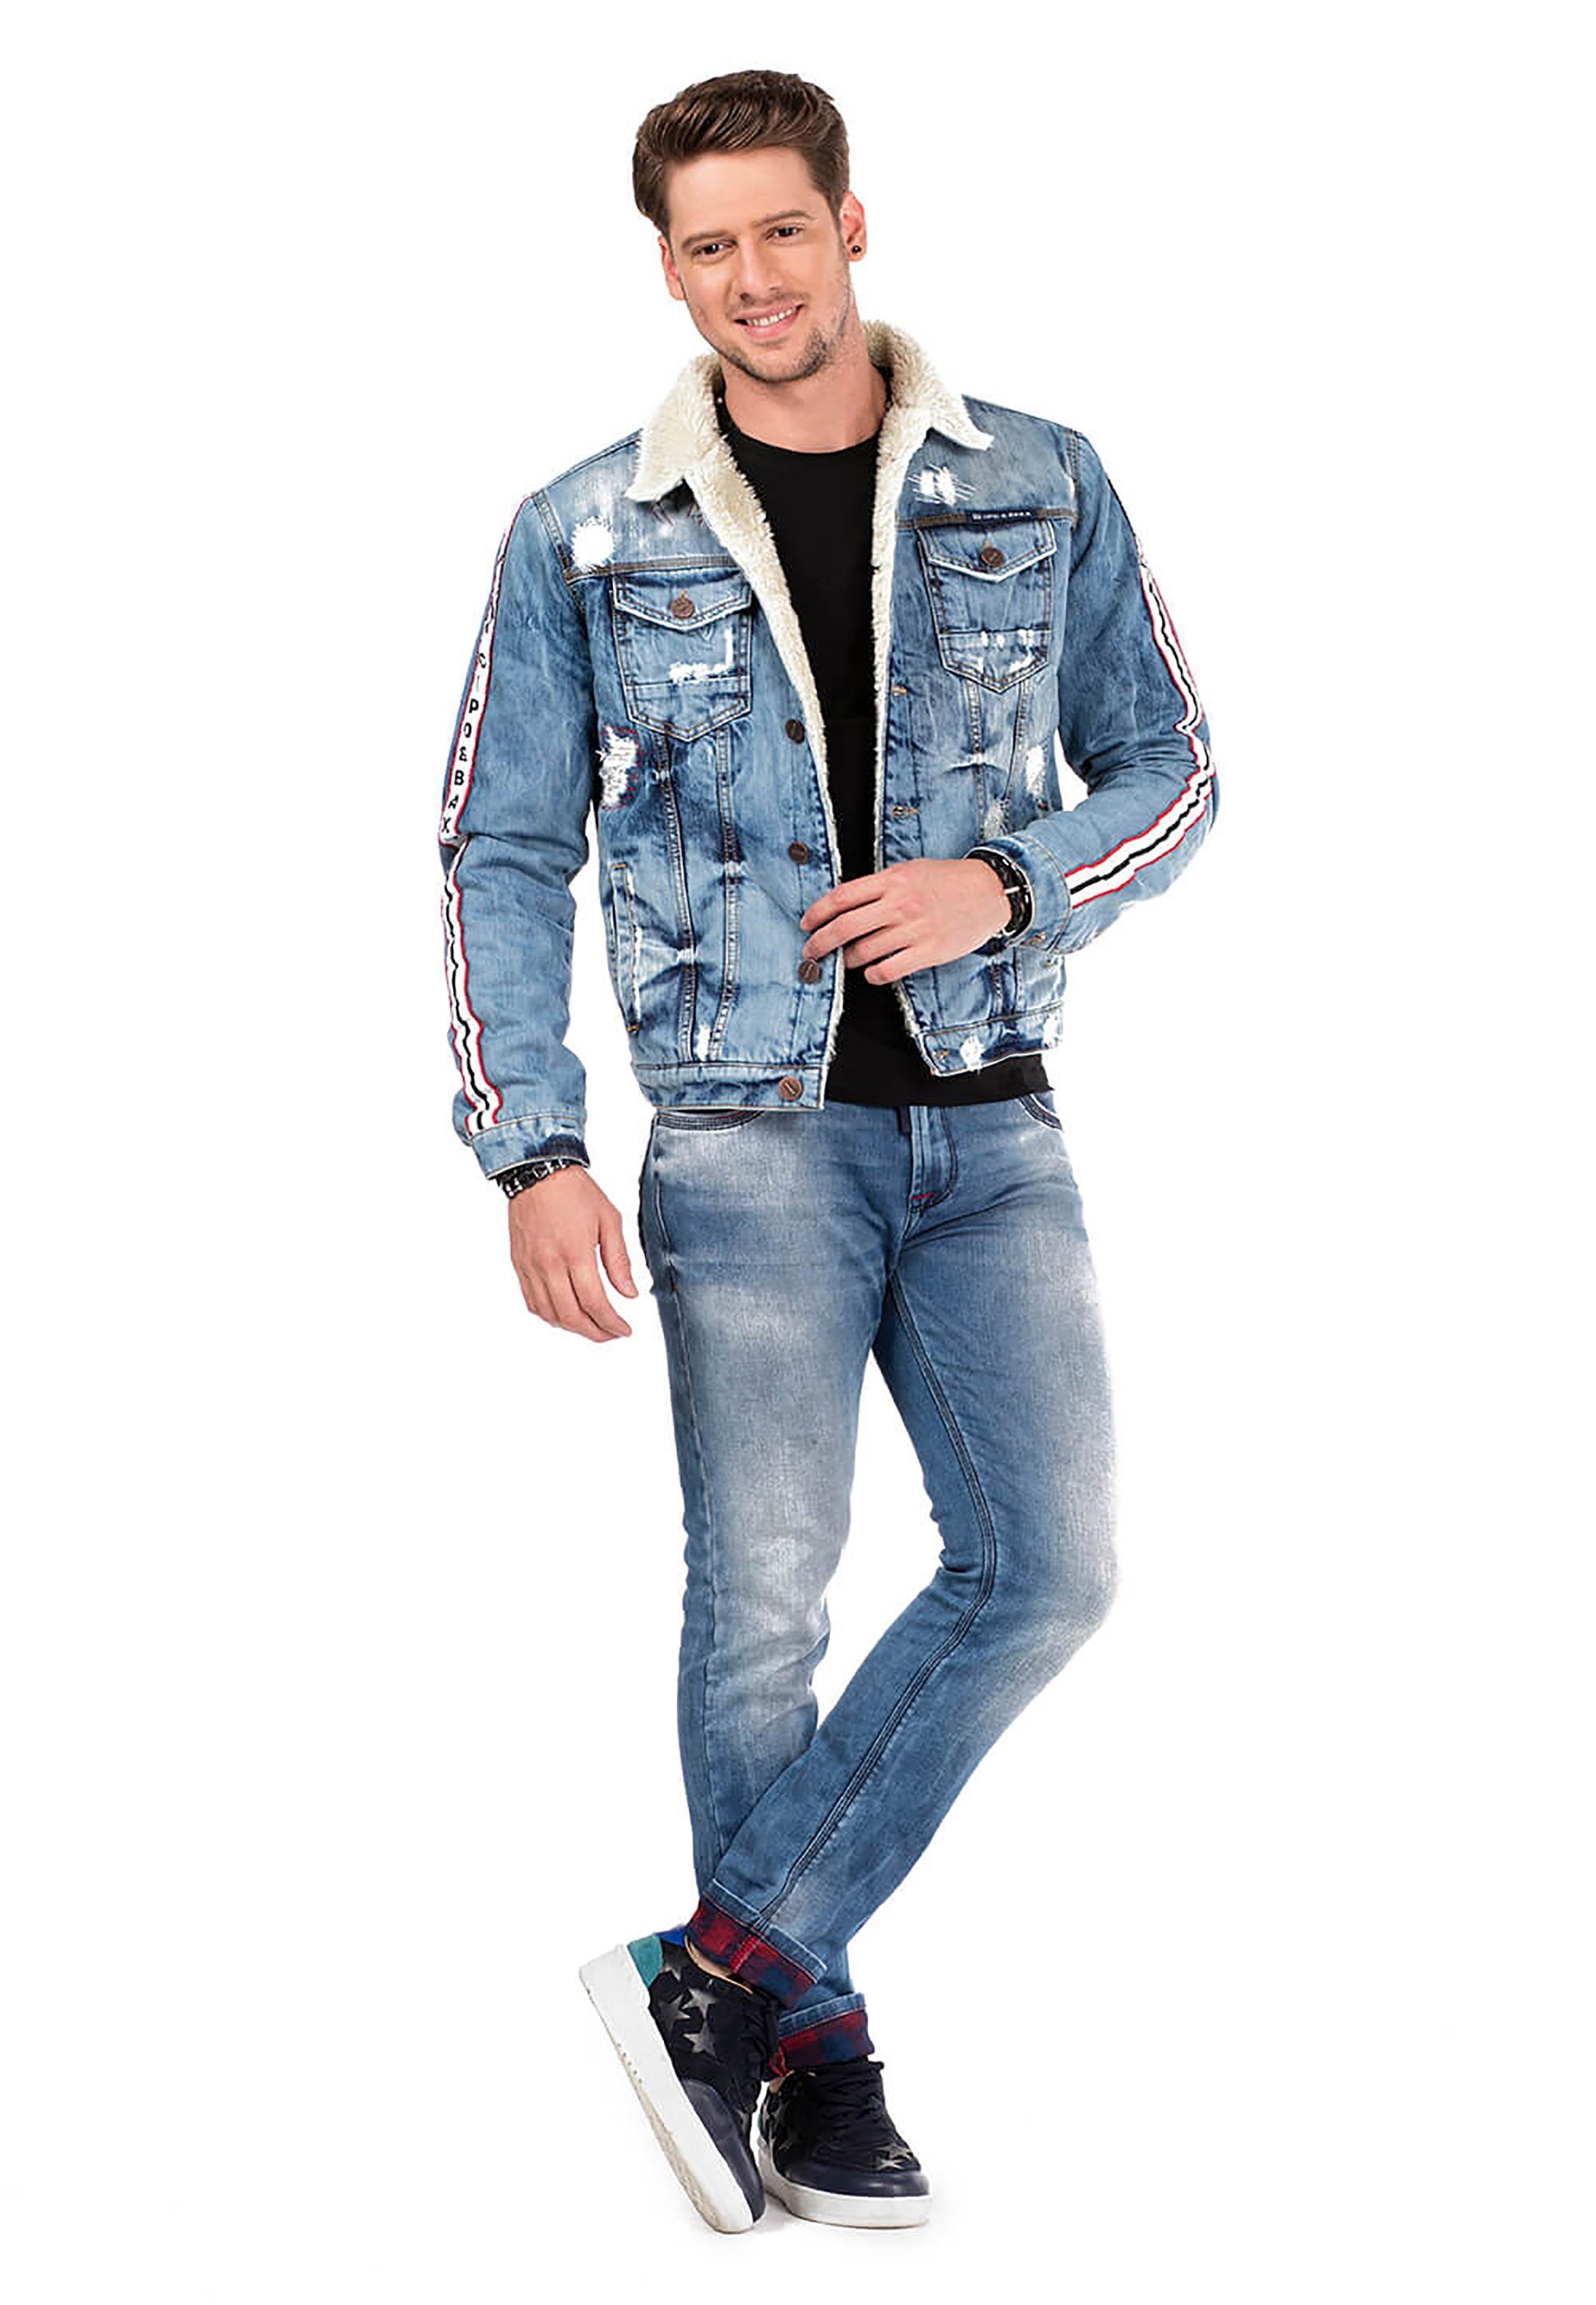 Cipo & Baxx Slim-fit-Jeans im blau Look Used